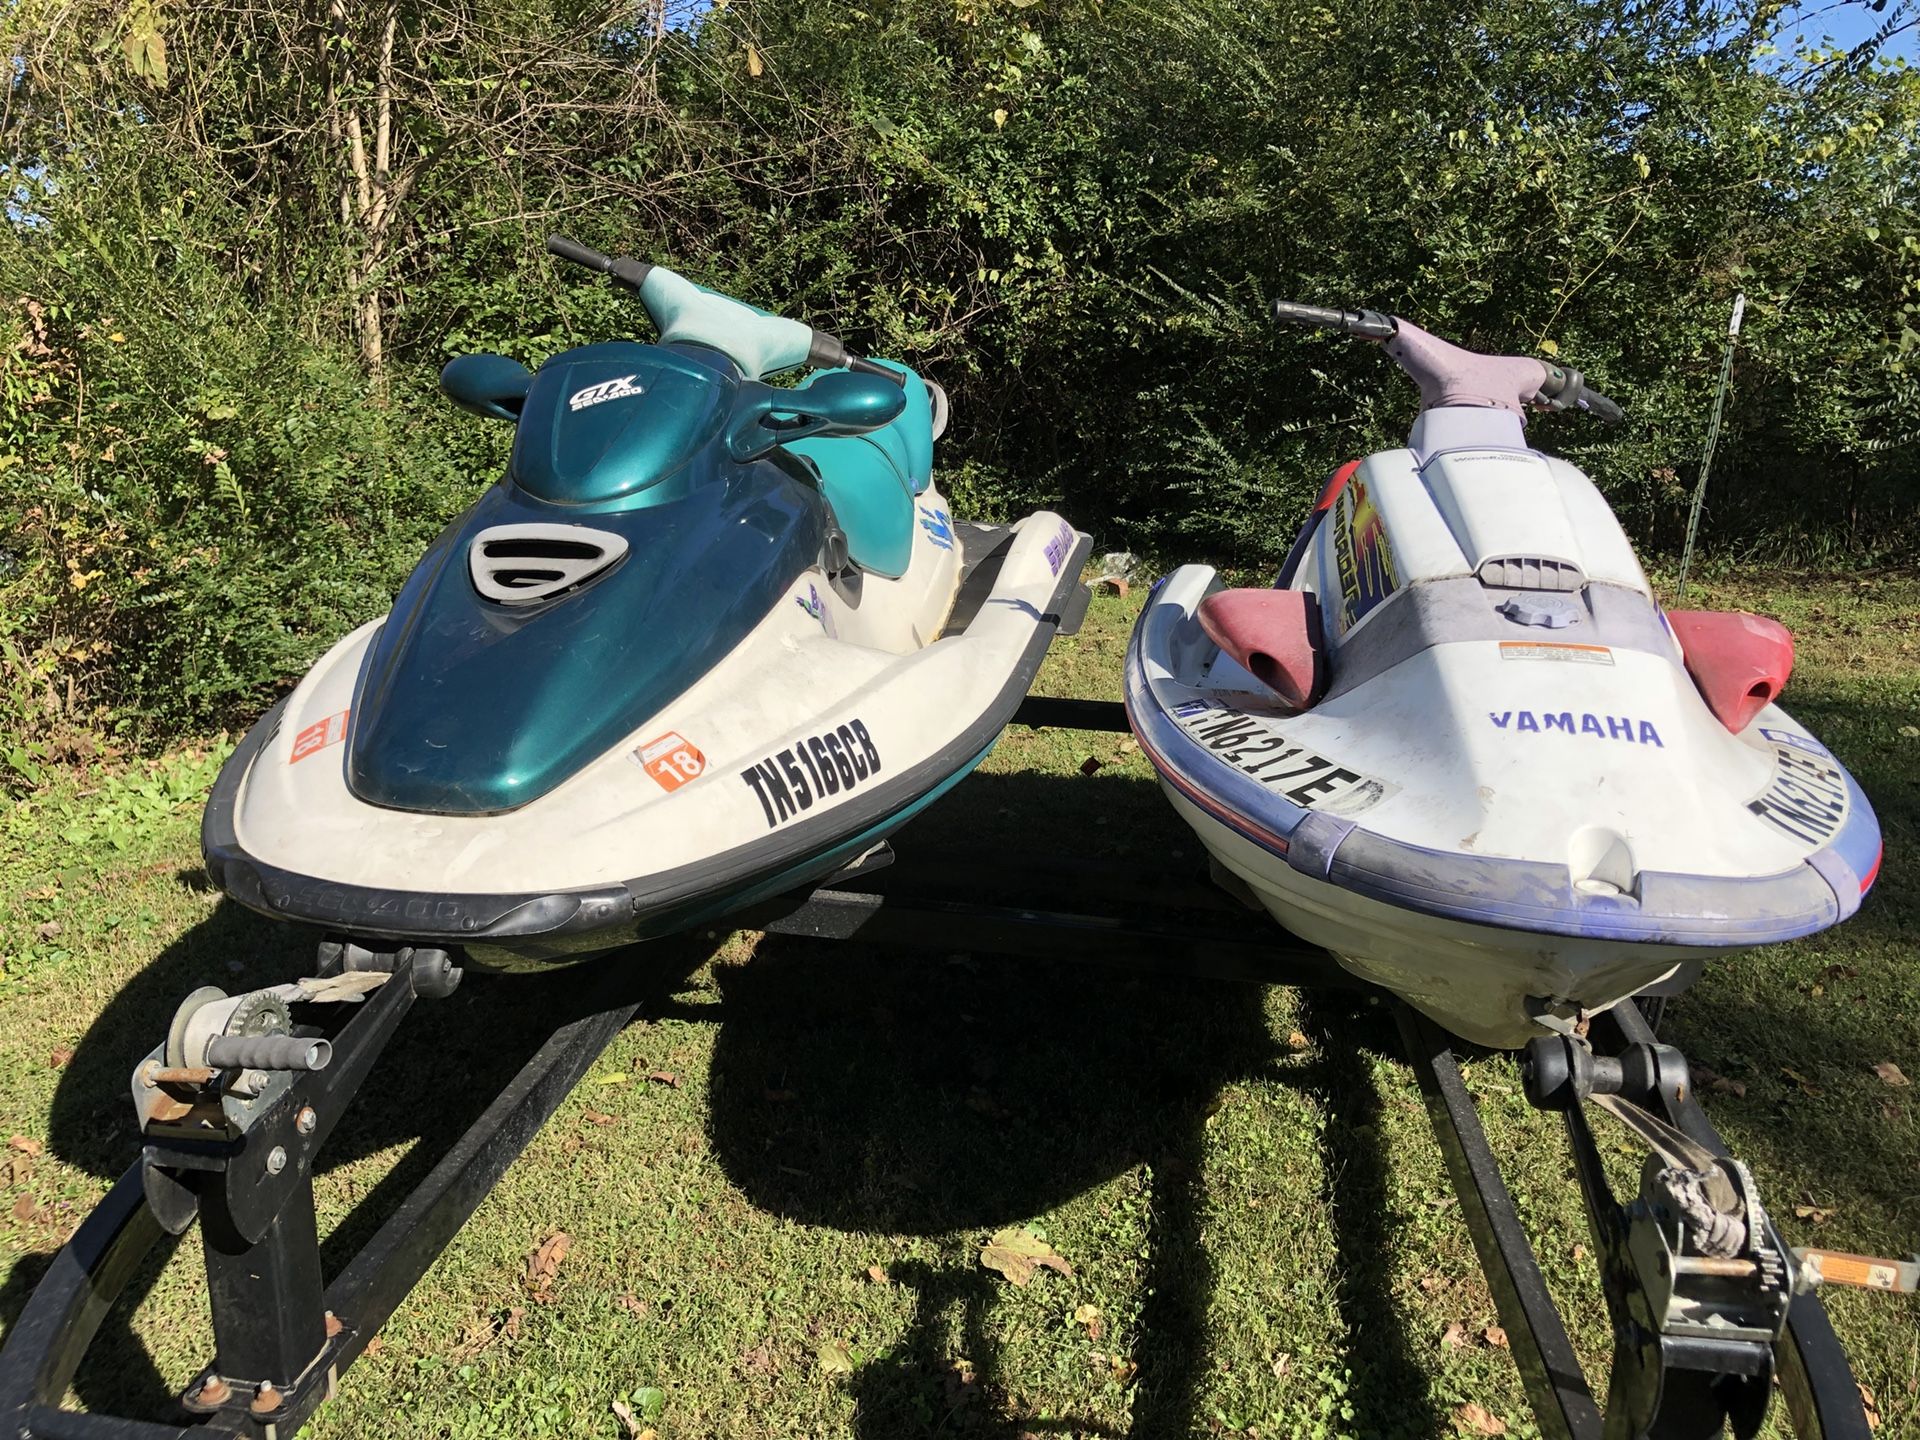 Seadoo and Yamaha jet skis